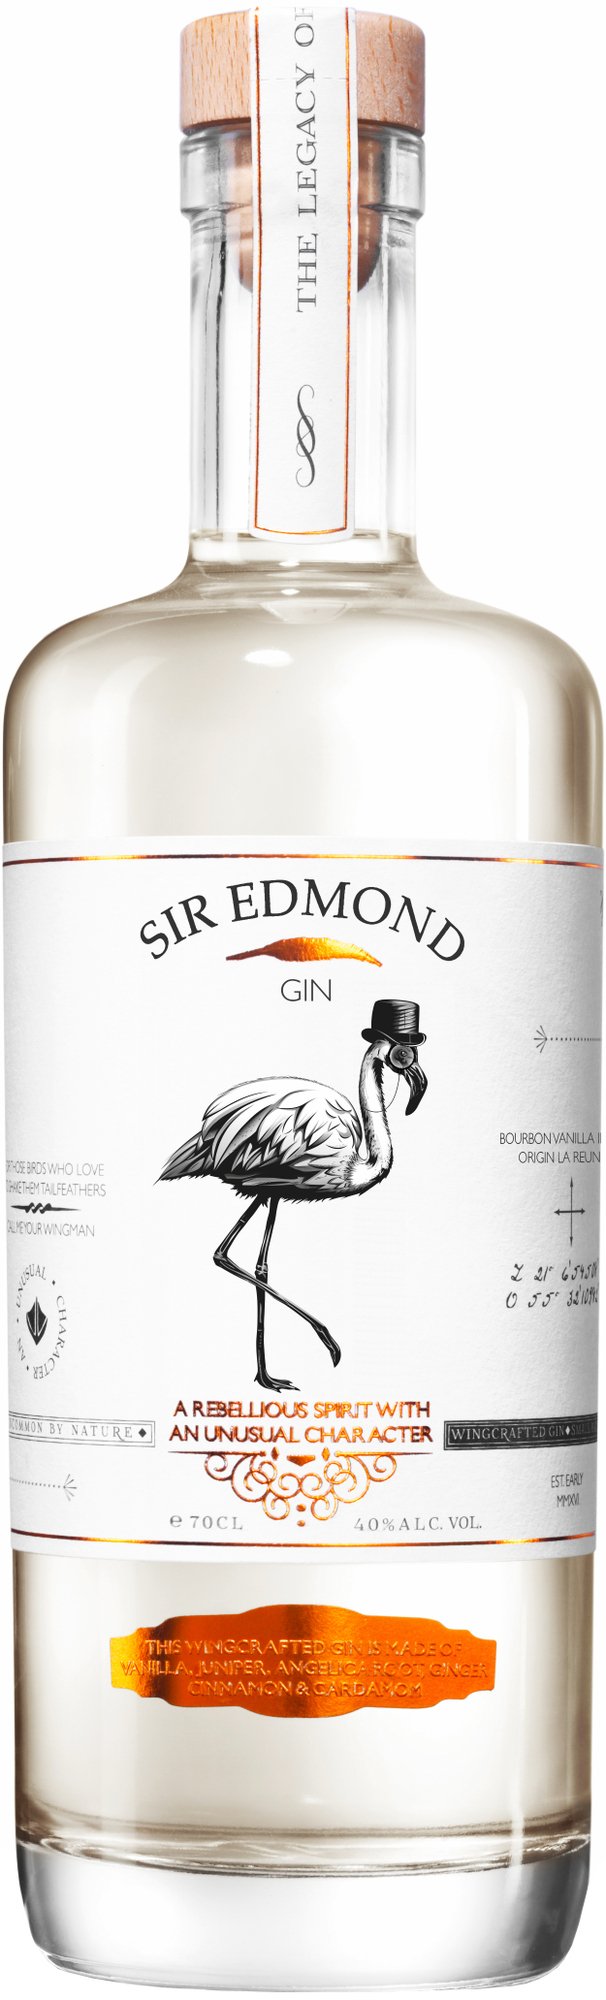 Sir Edmond Gin Bourbon Vanilla Infused Gin Bondston